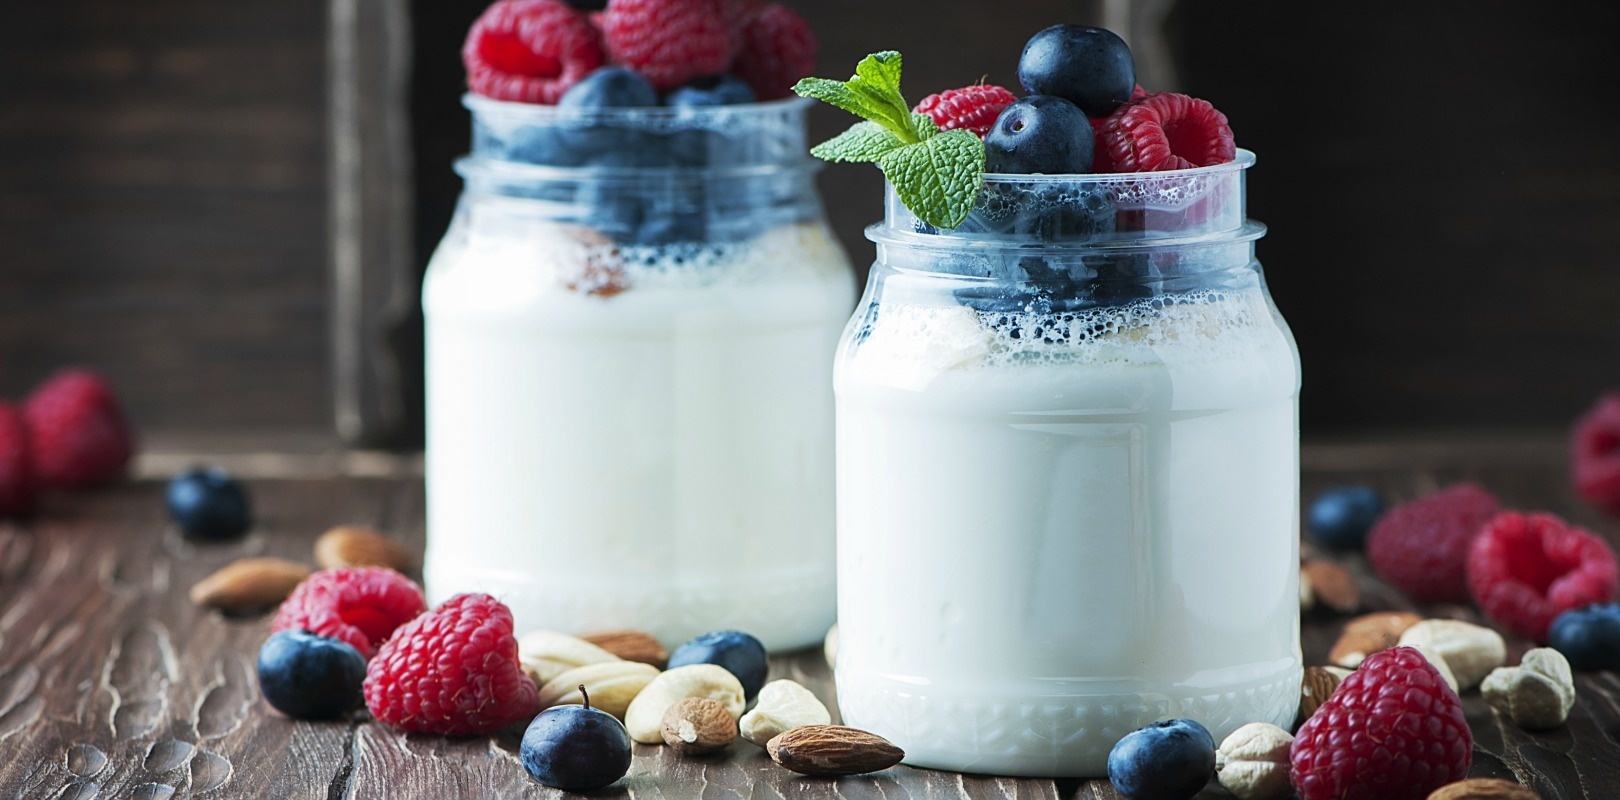 Основные виды йогурта, его состав и полезные свойства